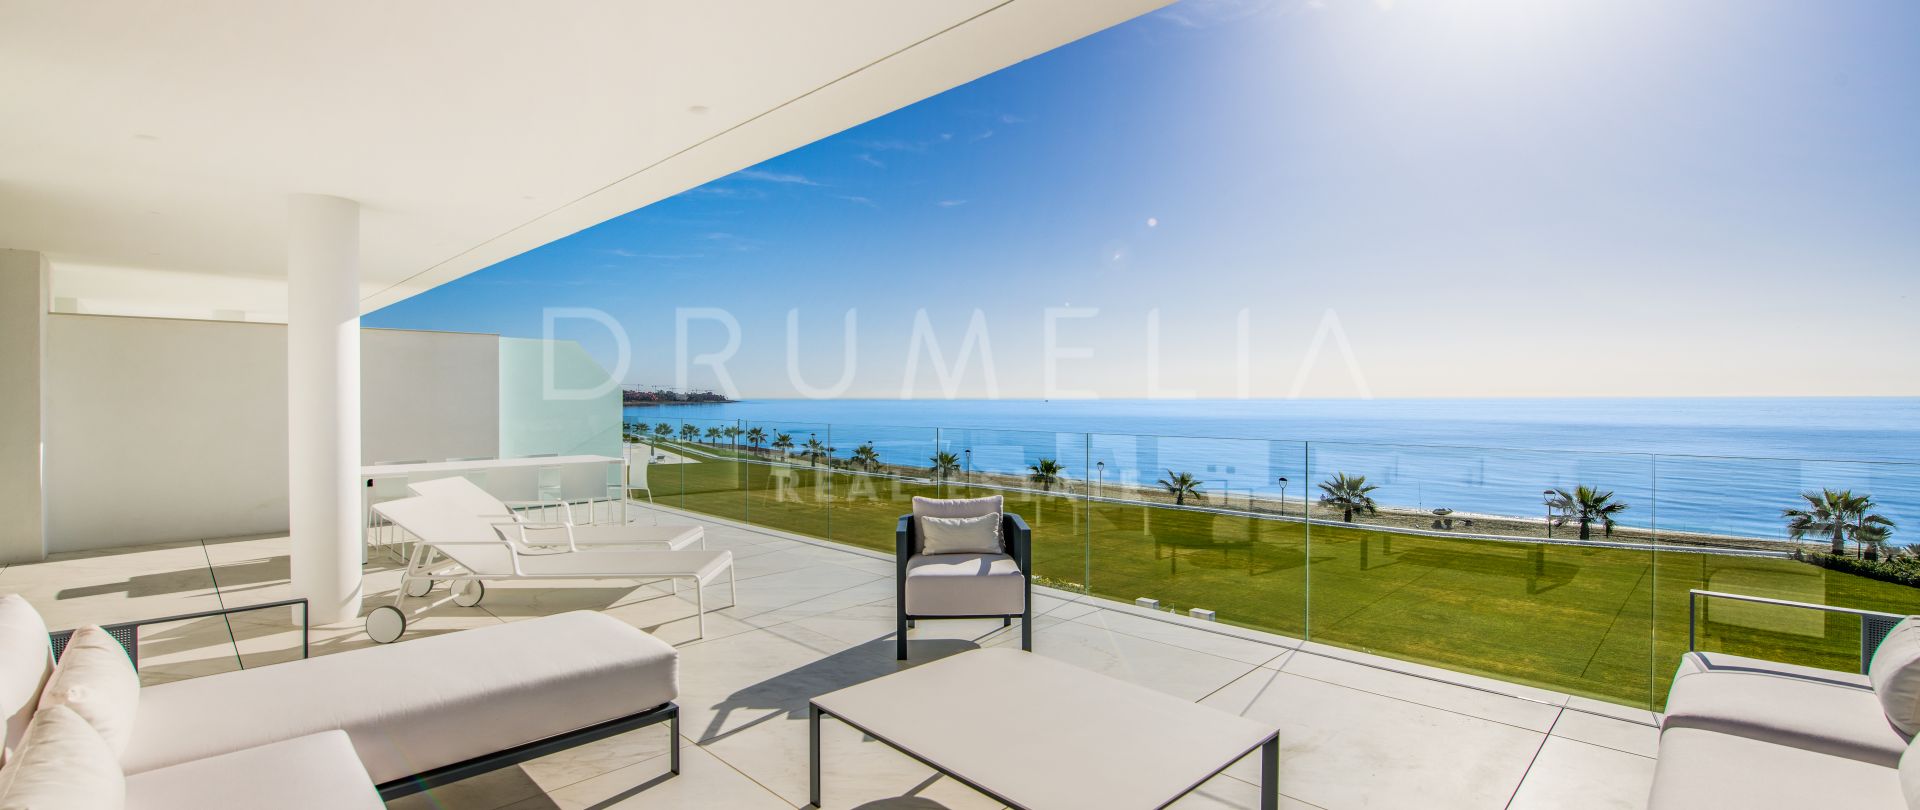 Appartement moderne de luxe en front de mer avec vue imprenable sur la mer, Estepona